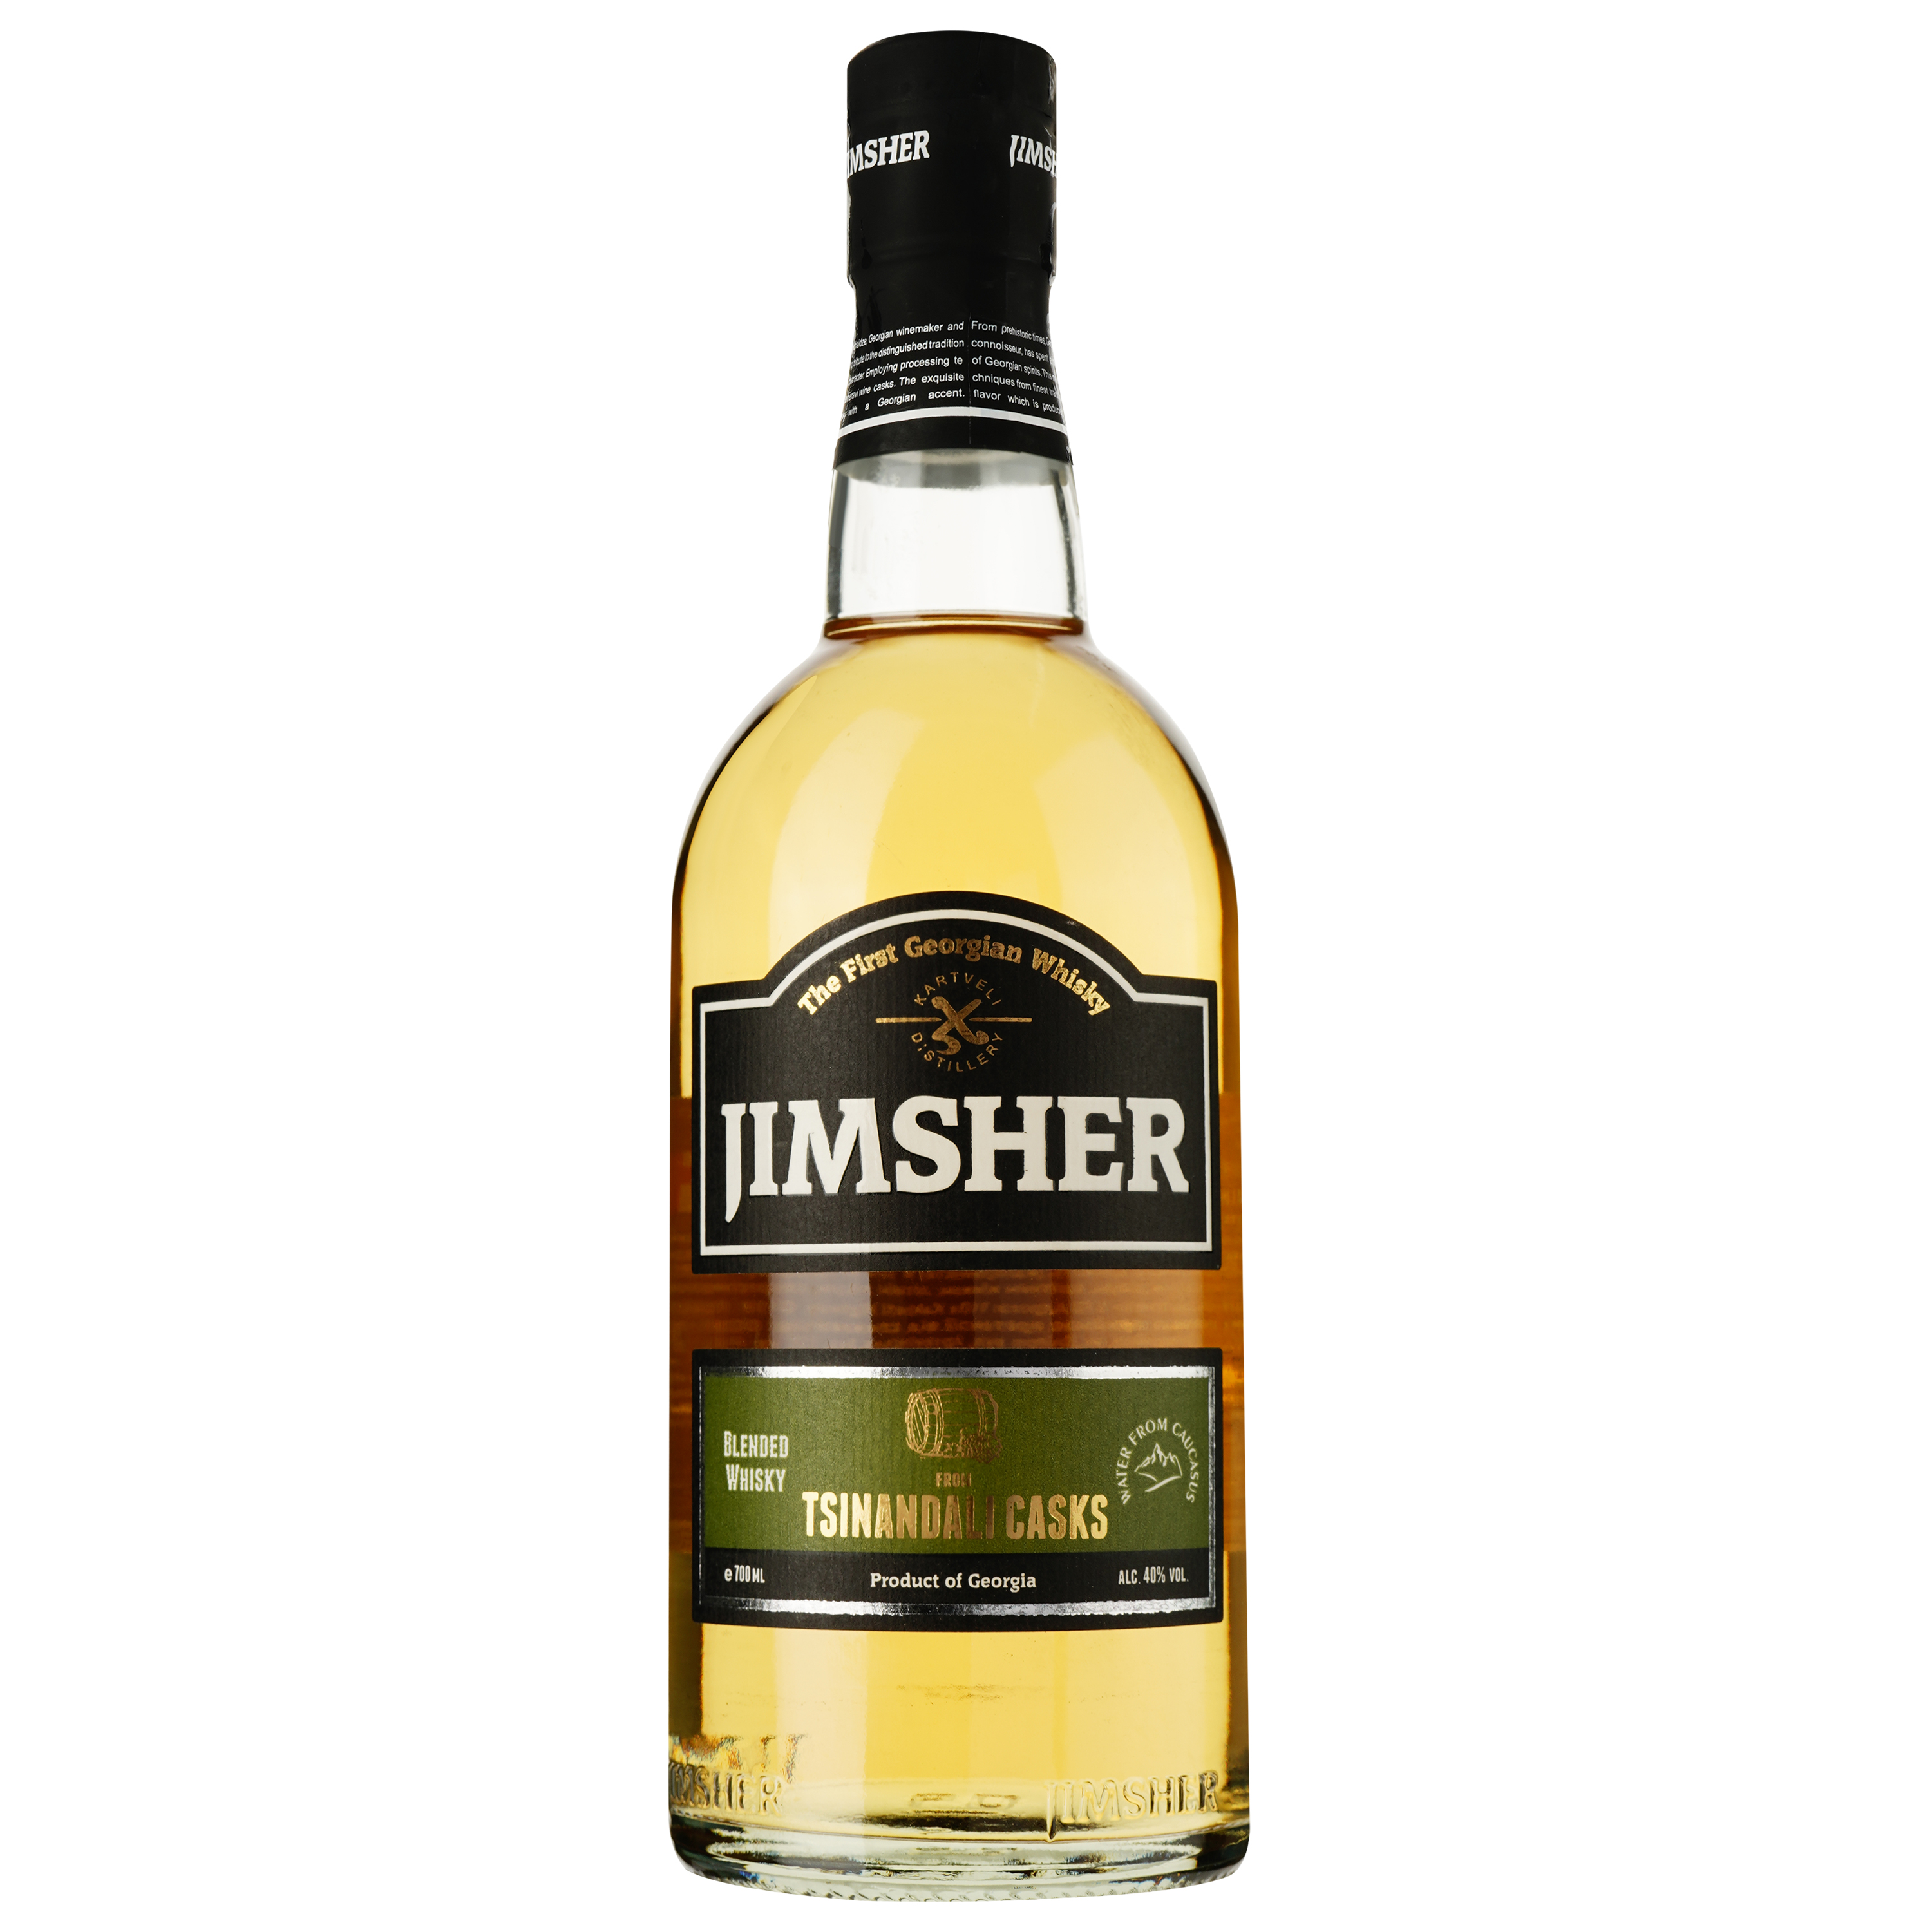 Віскі Jimsher Tsinandali Casks Blended Georgian Whisky, 40%, 0.7 л - фото 1